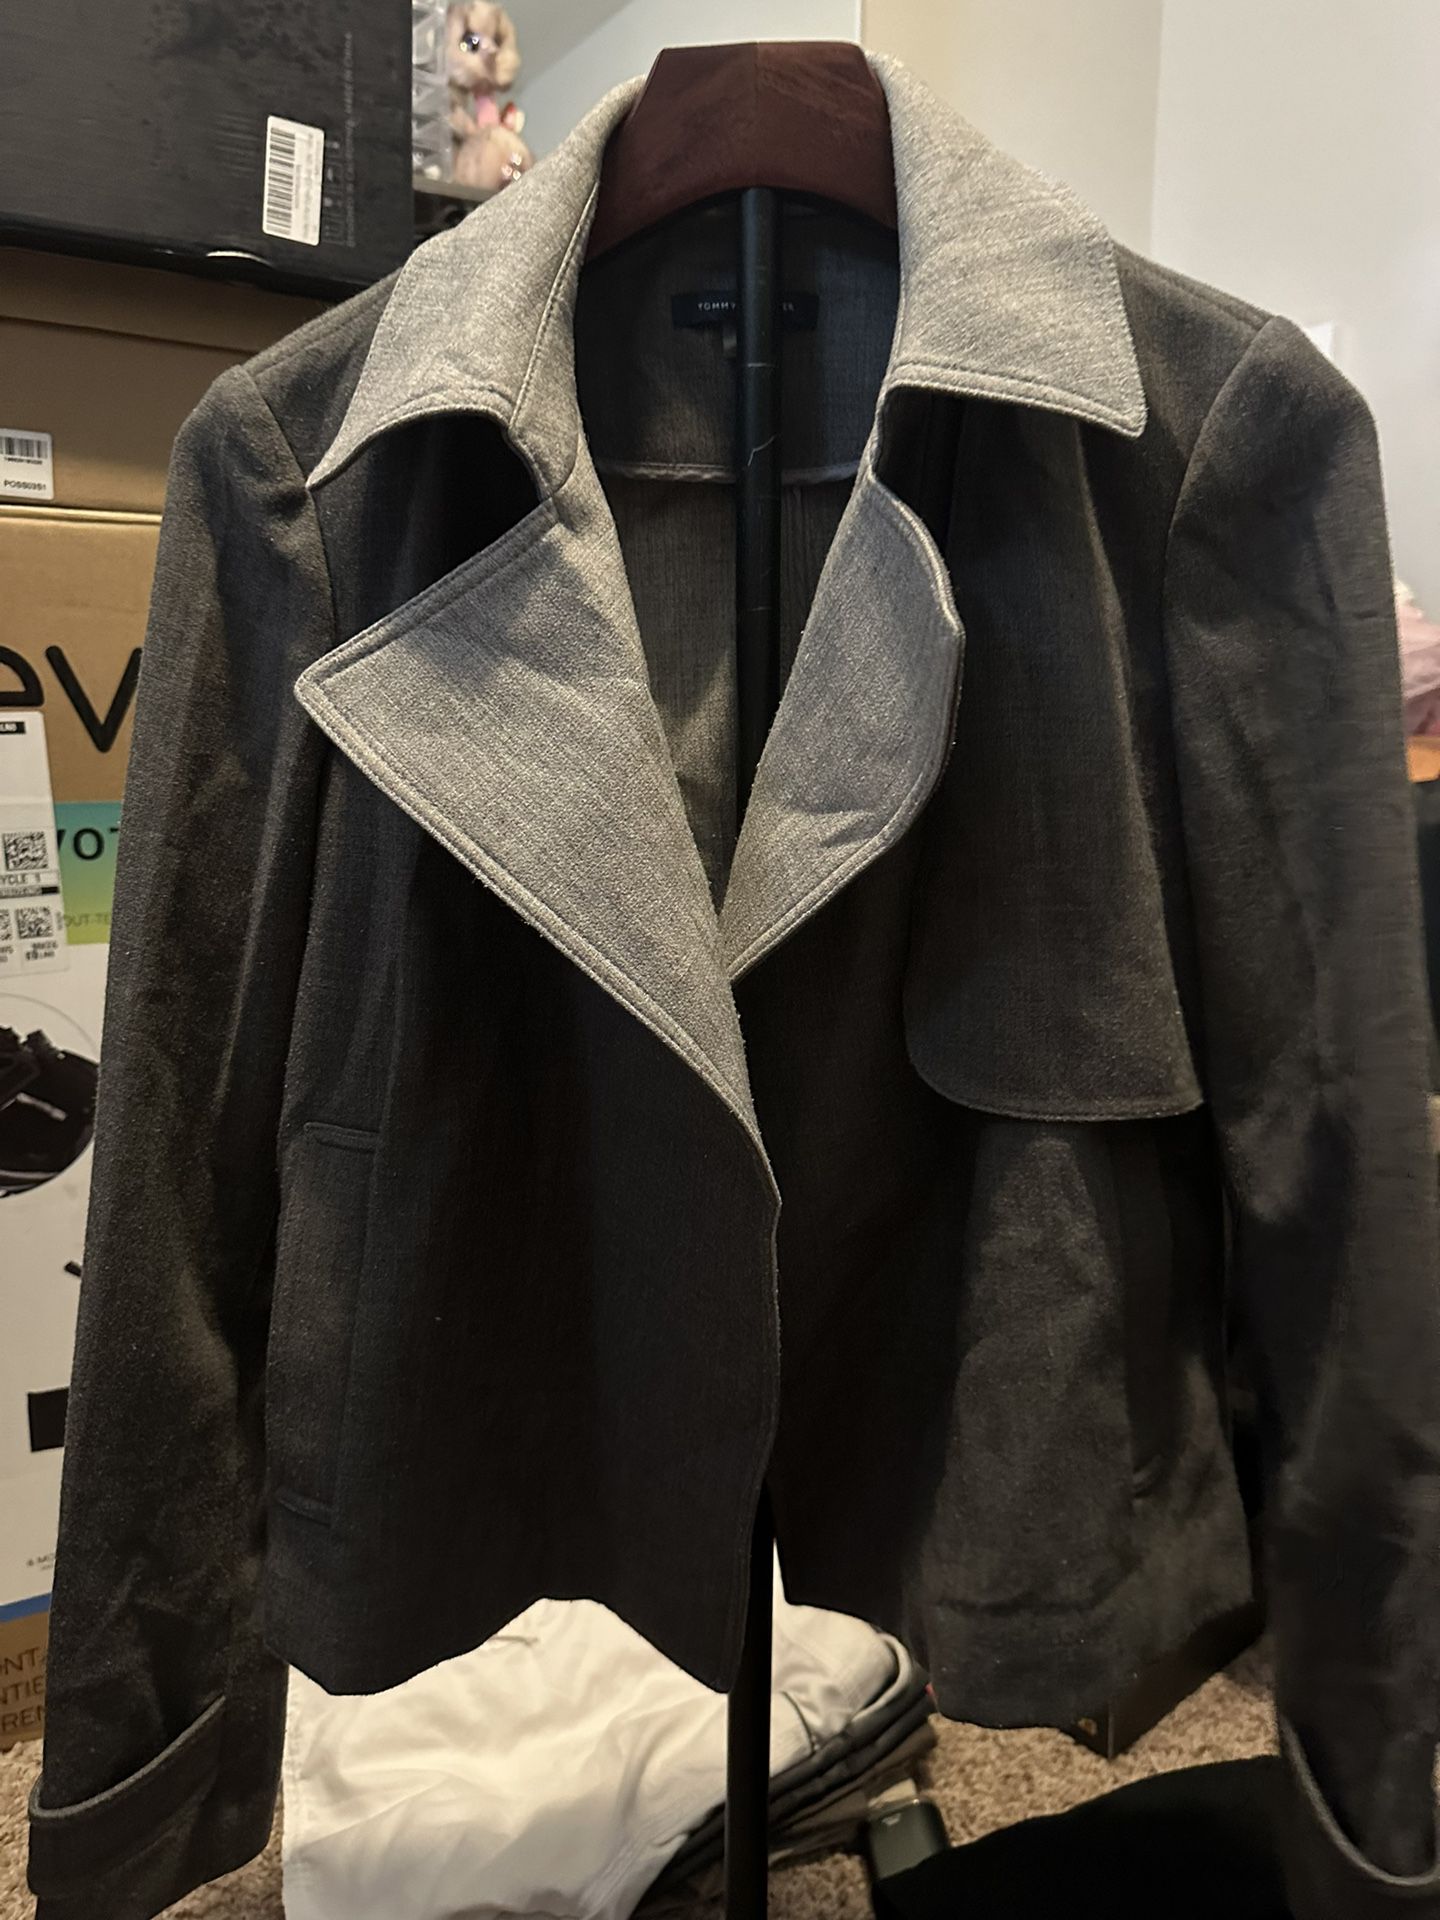 Tommy Hilfiger Woman’s Suit Jacket 